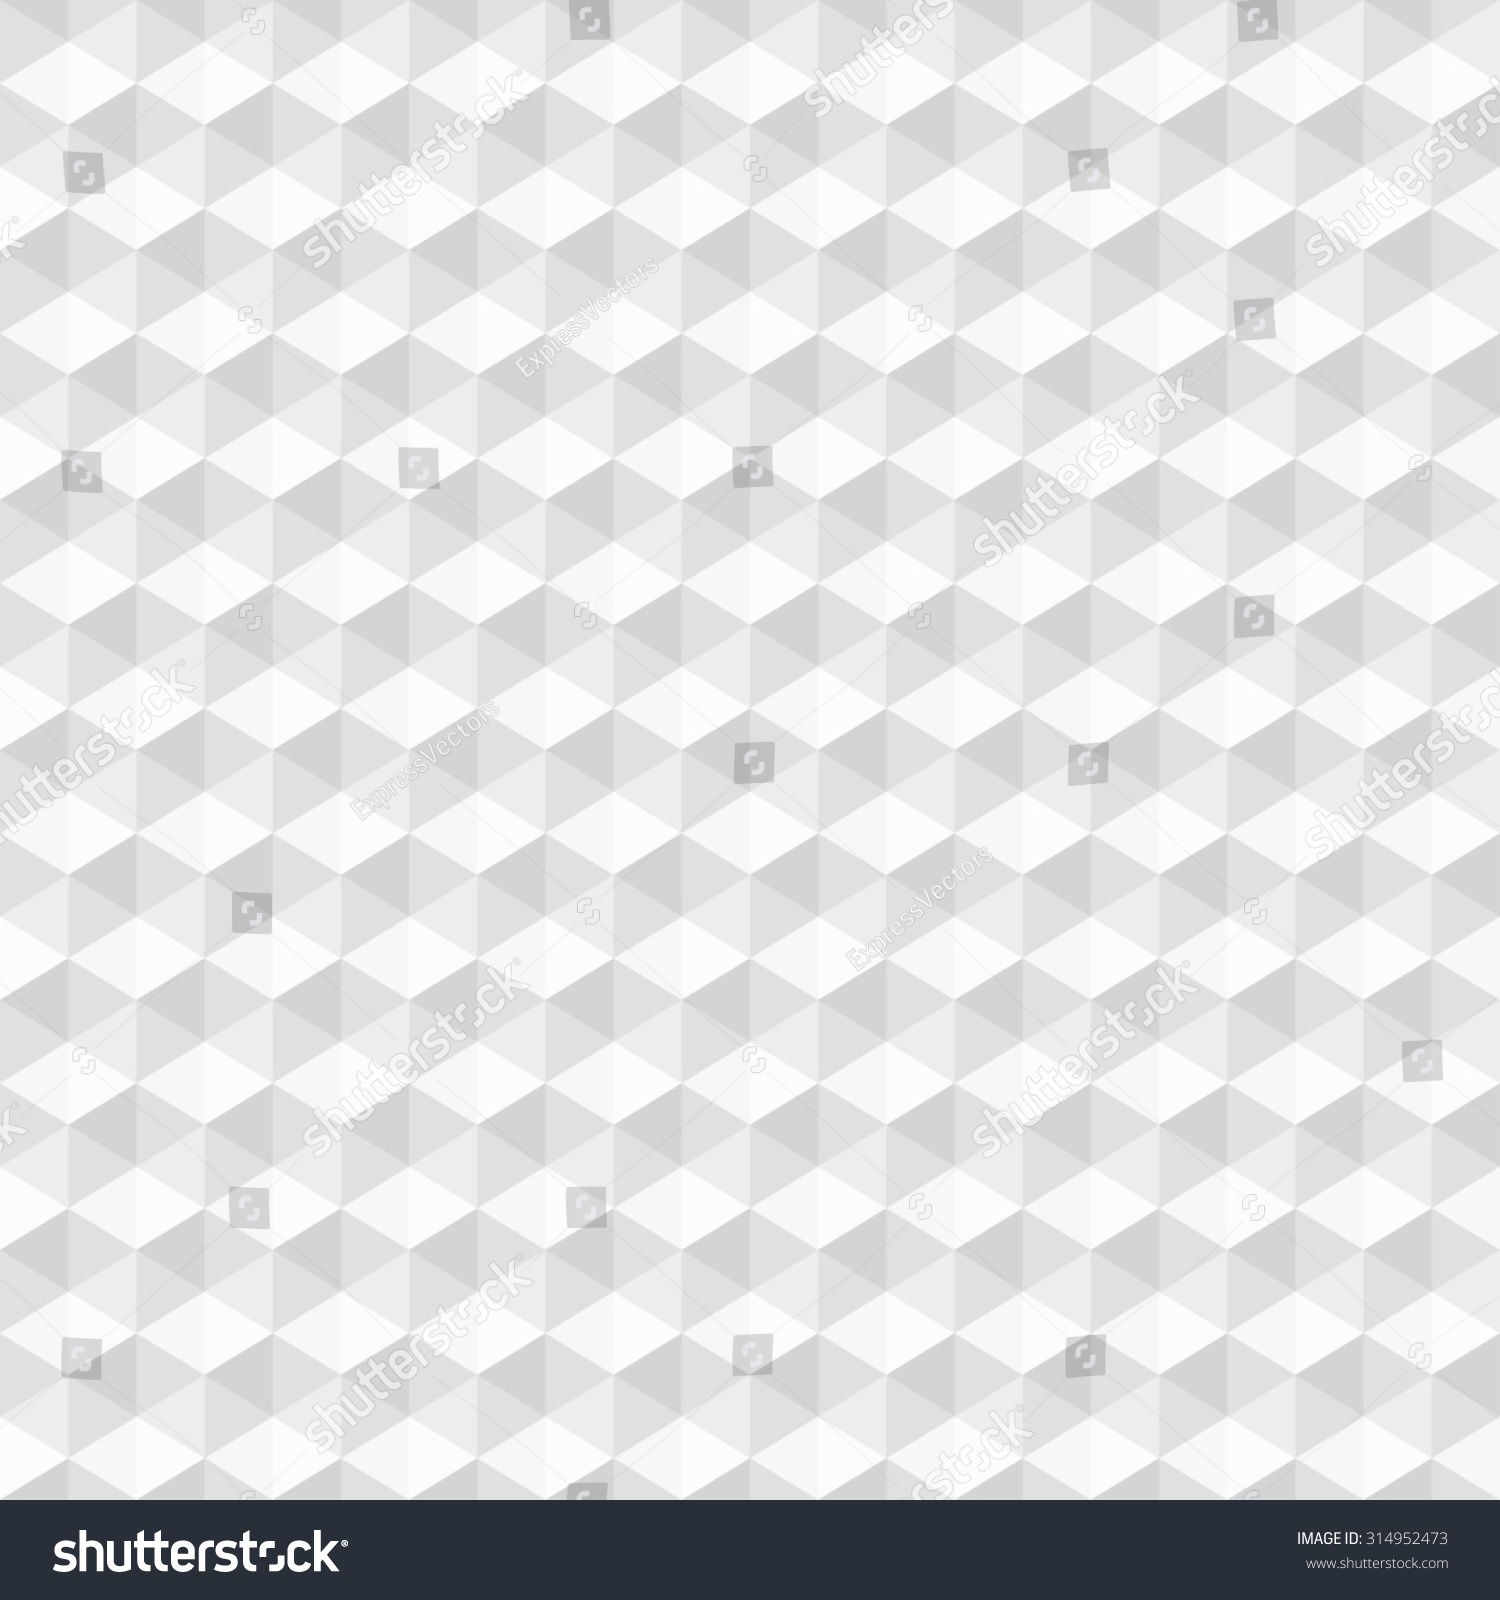 White Geometric Texture - Seamless Background. Stock Photo 314952473 ...